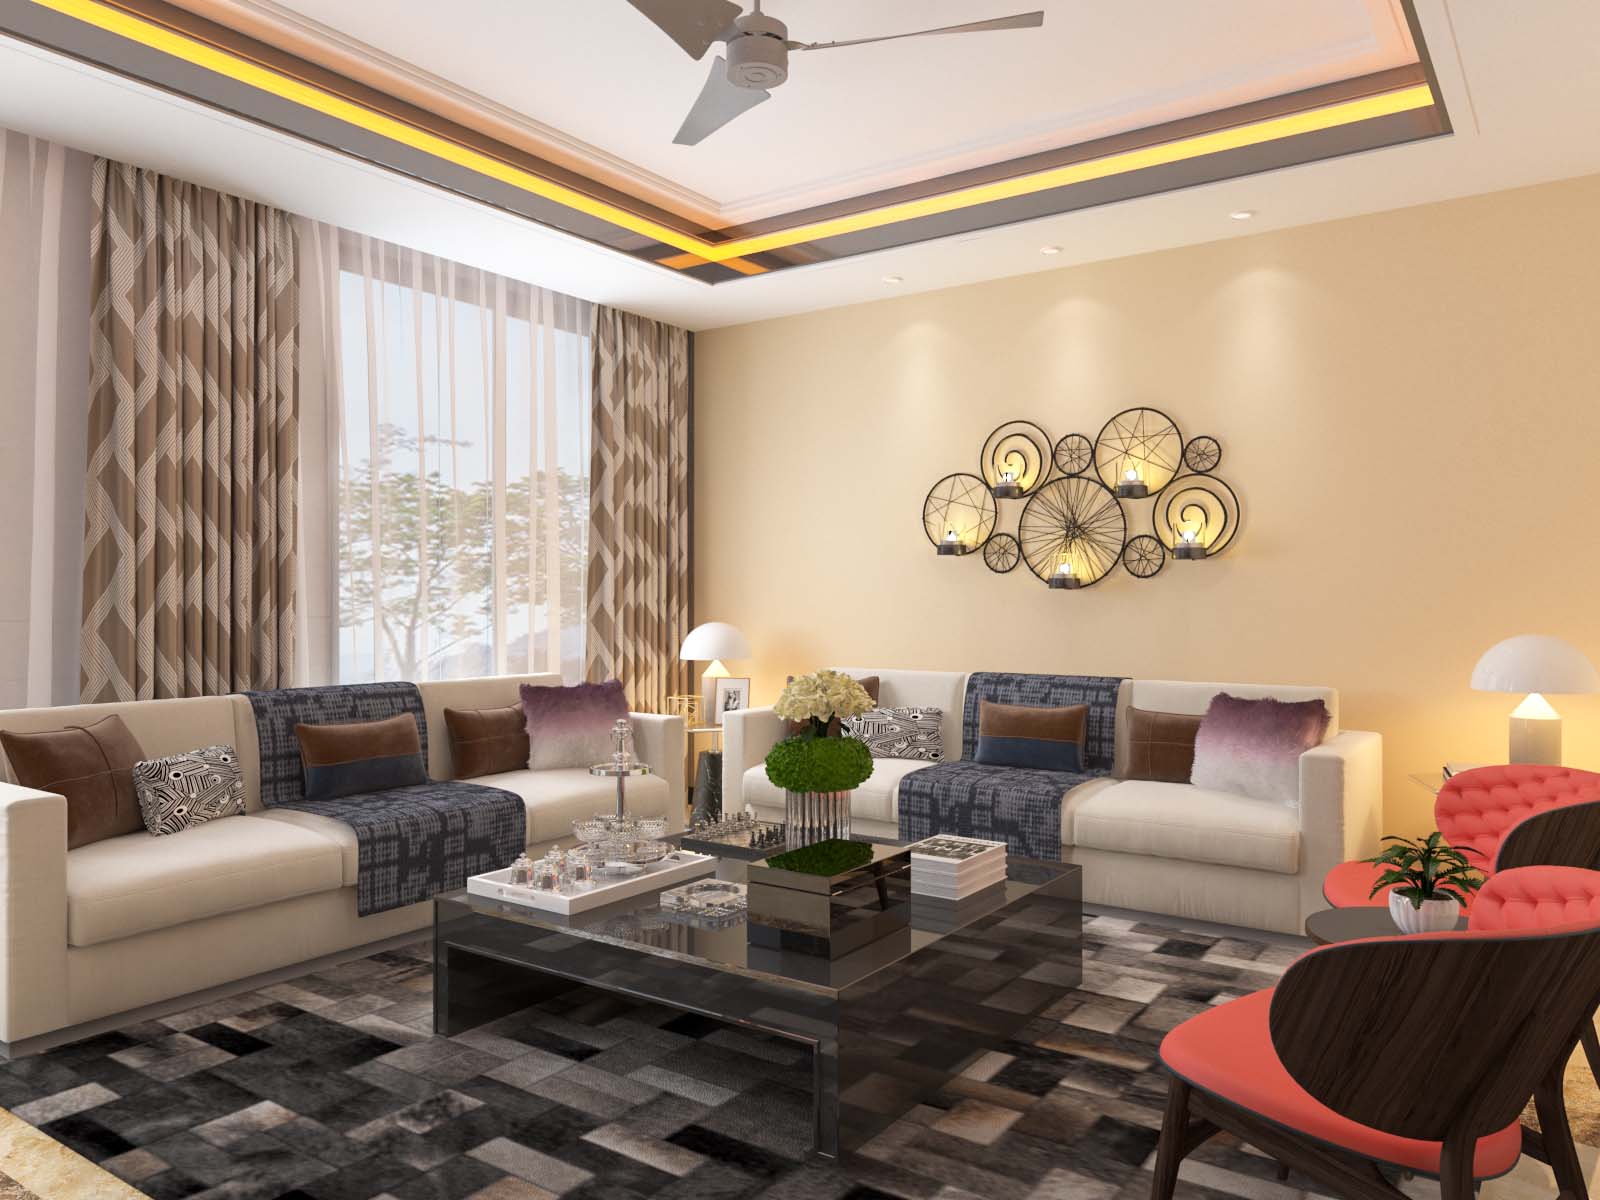 living room interior ideas india